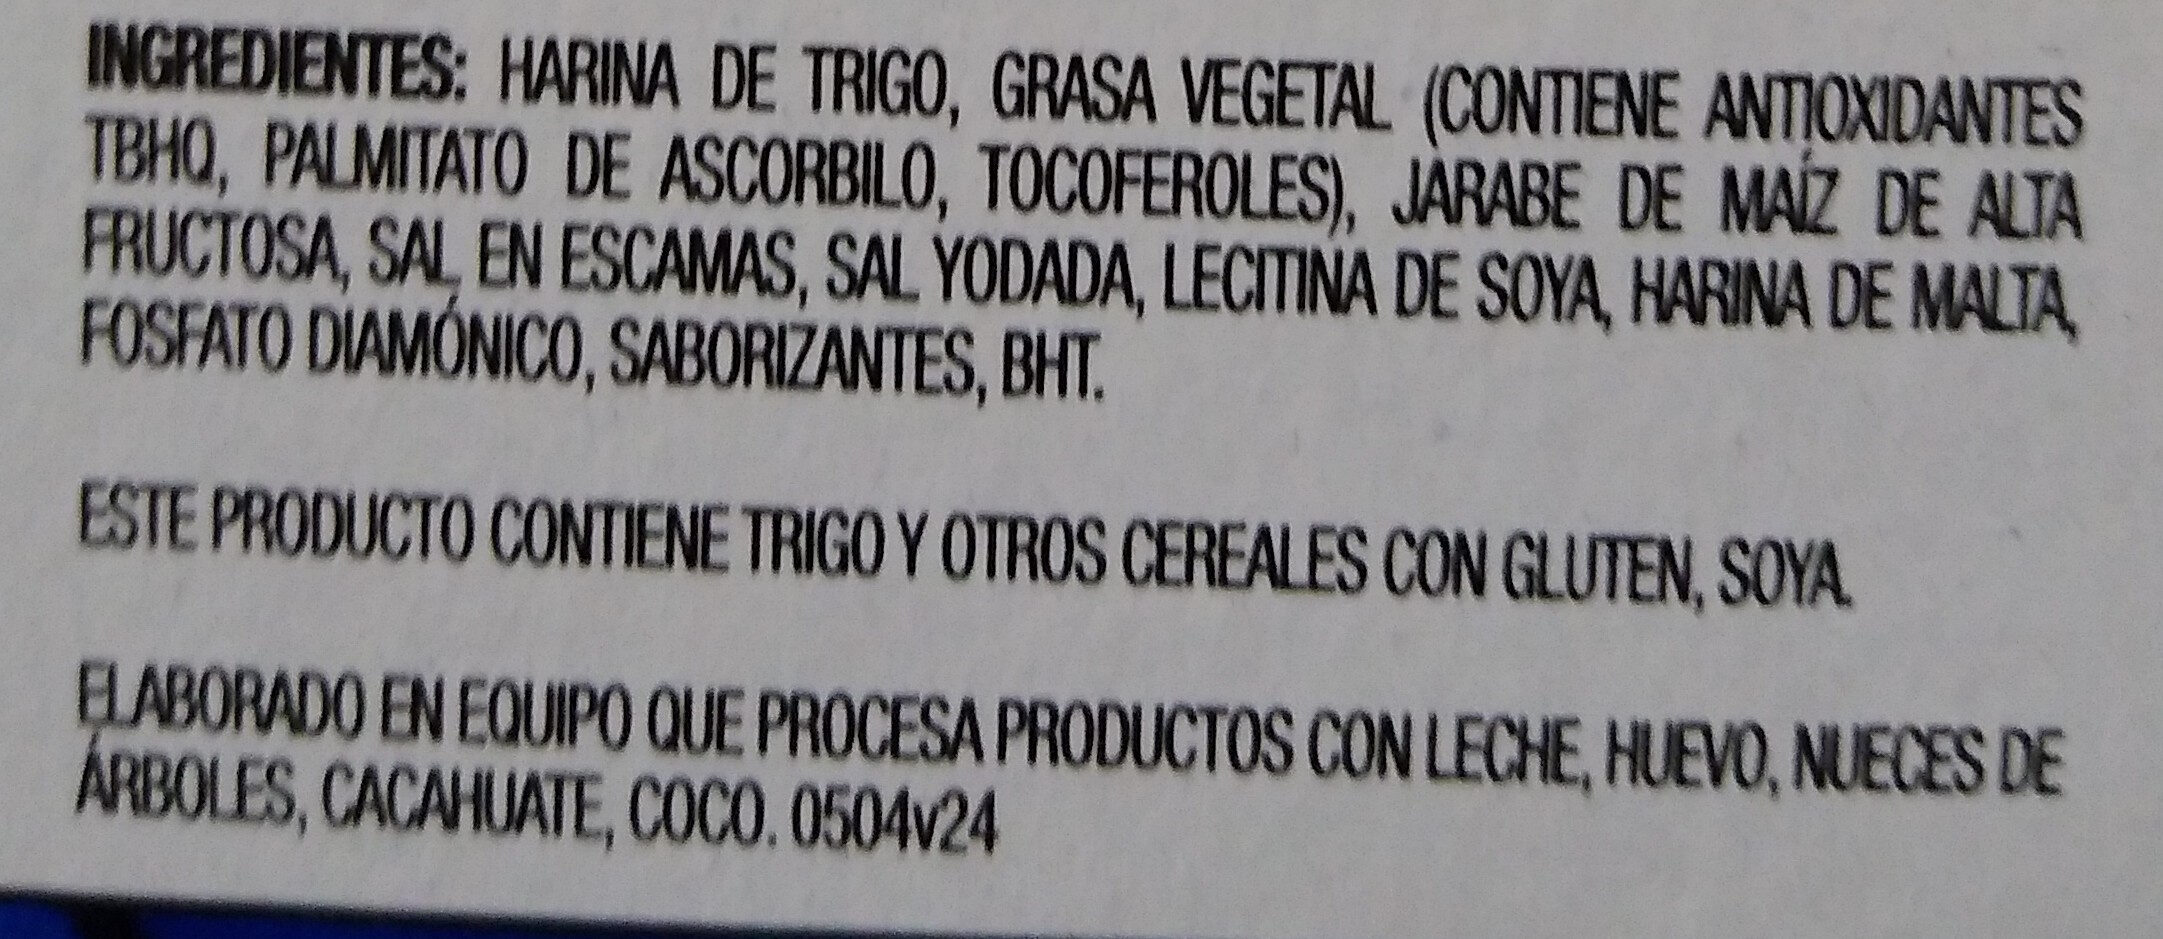 Saladitas - Ingredientes